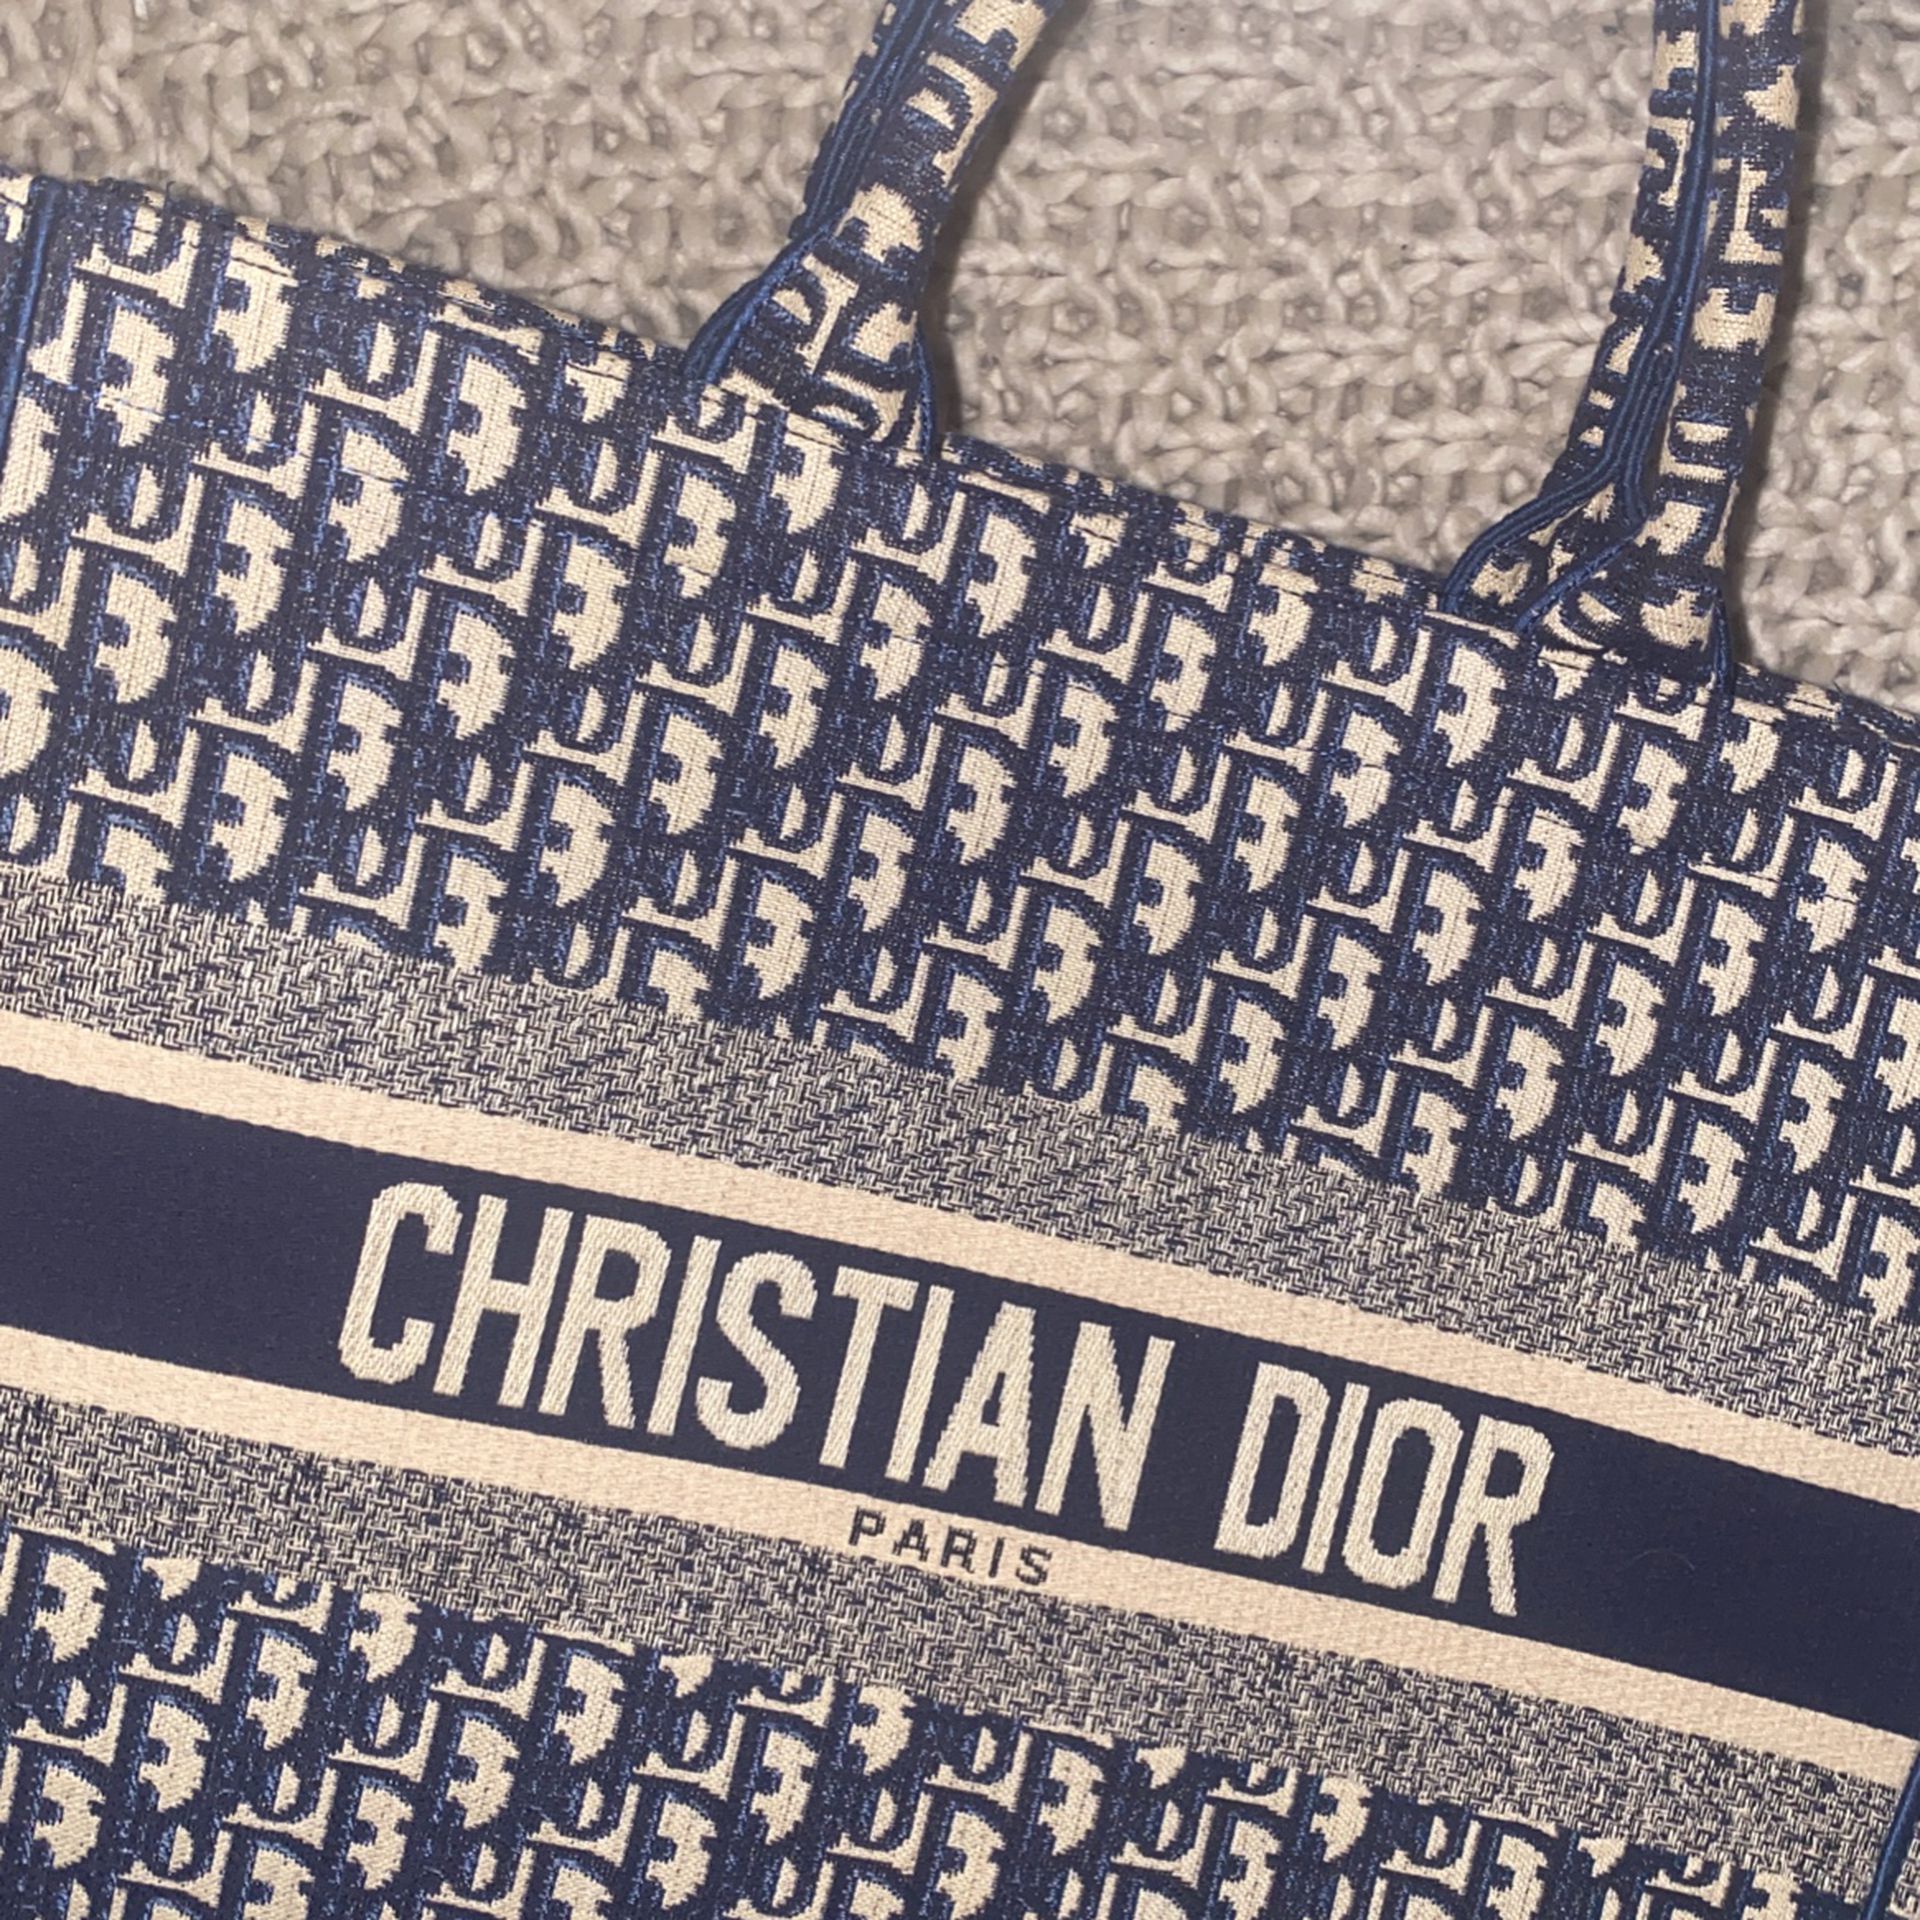 Vintage Christian Dior Garment Bag for Sale in Fort Lauderdale, FL - OfferUp